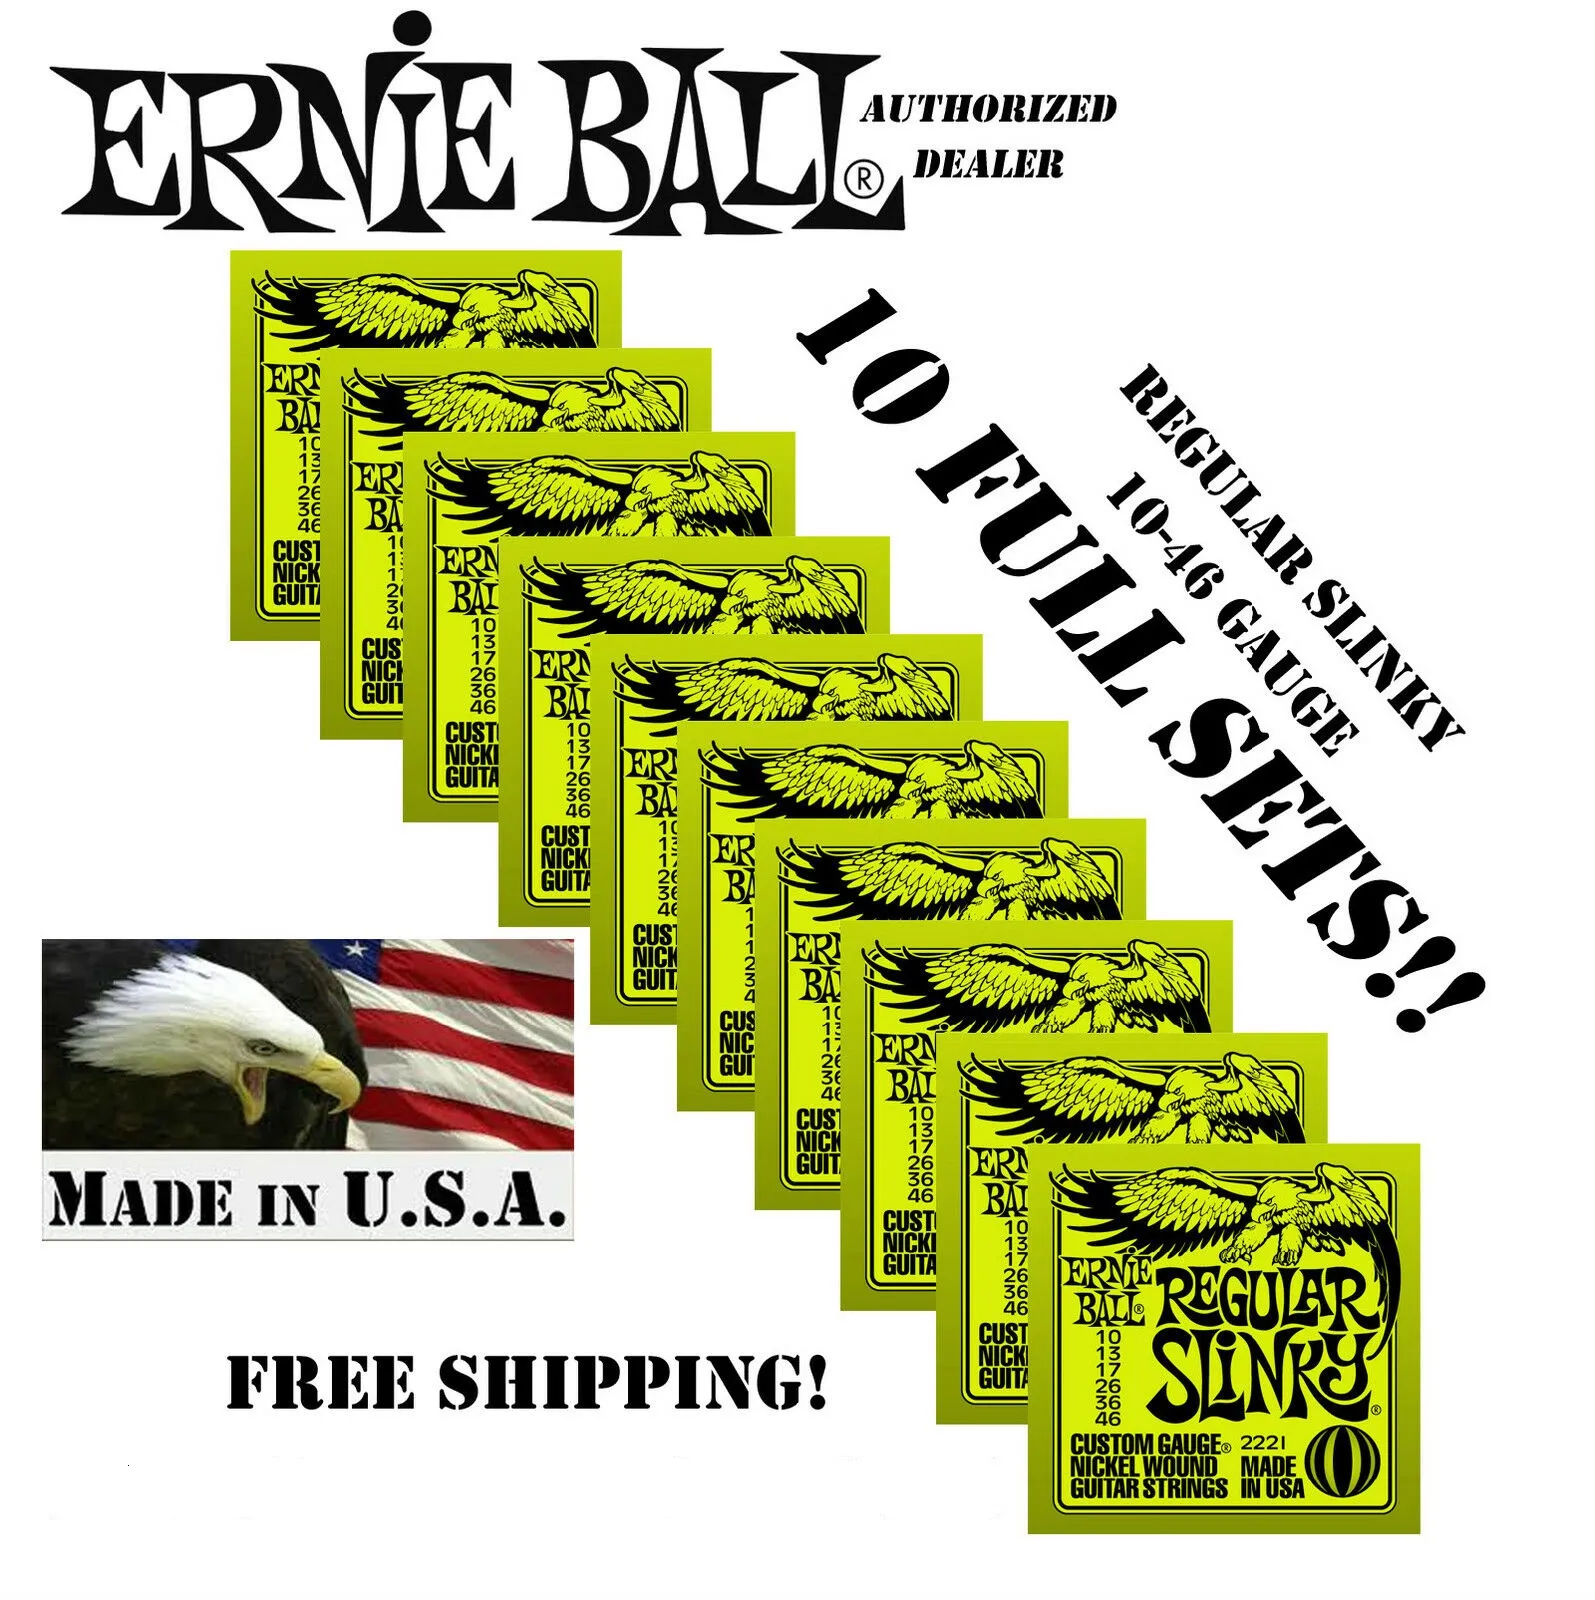 New 10 Pack Ernie Ball Regular Slinky 10-46 Strings de guitarra elétrica 2221 (10 conjuntos)